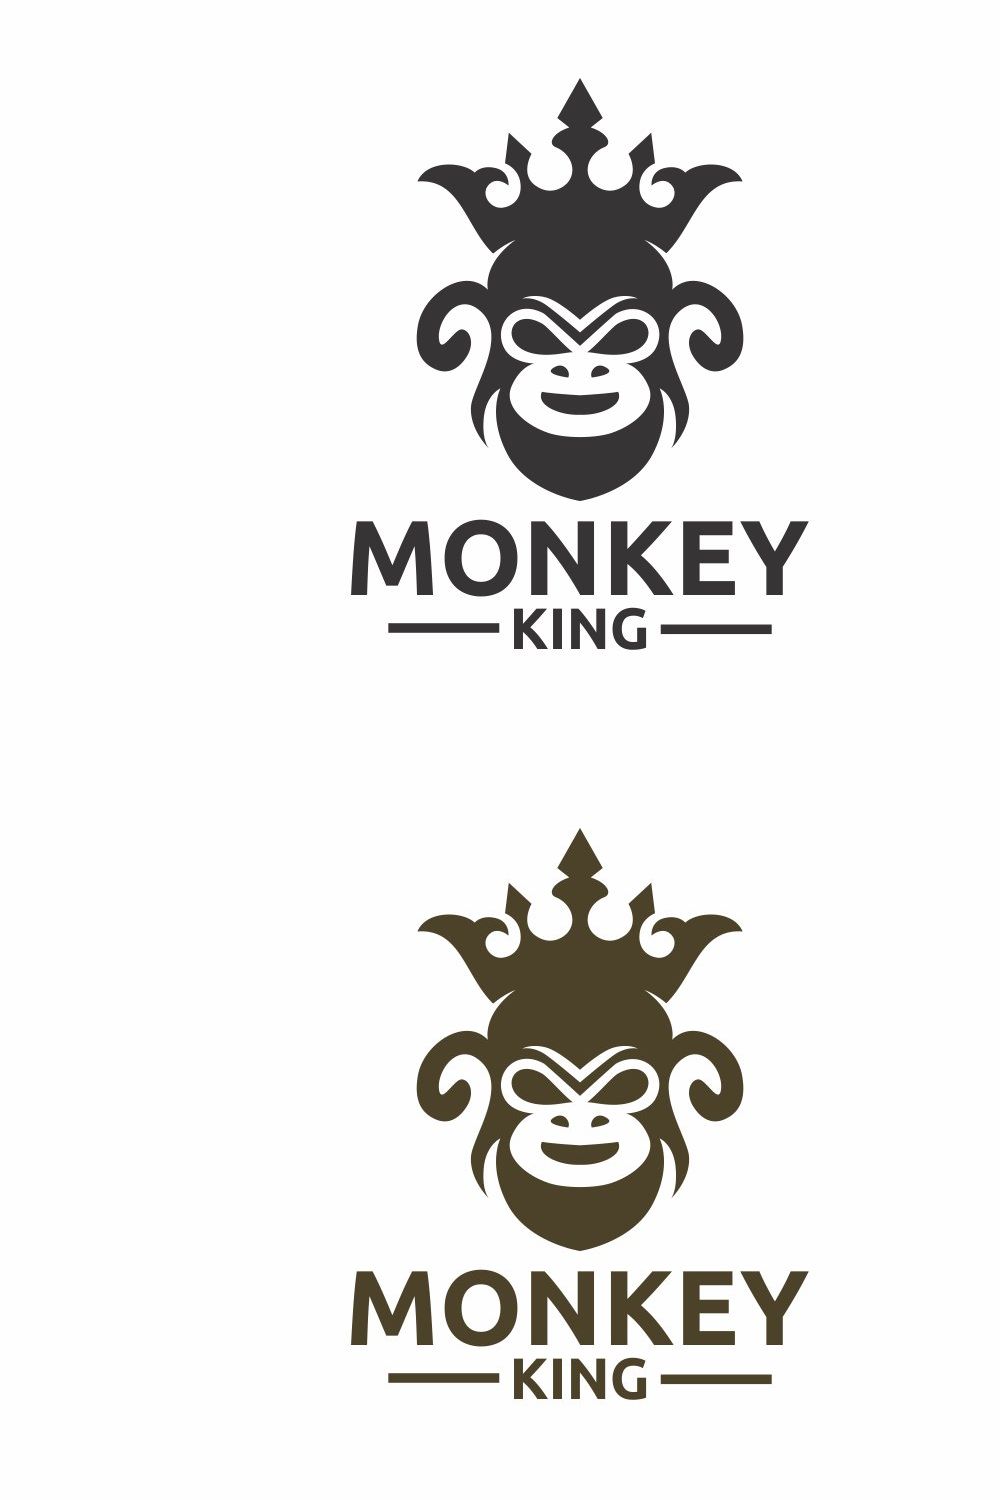 King Monkey Logo pinterest preview image.